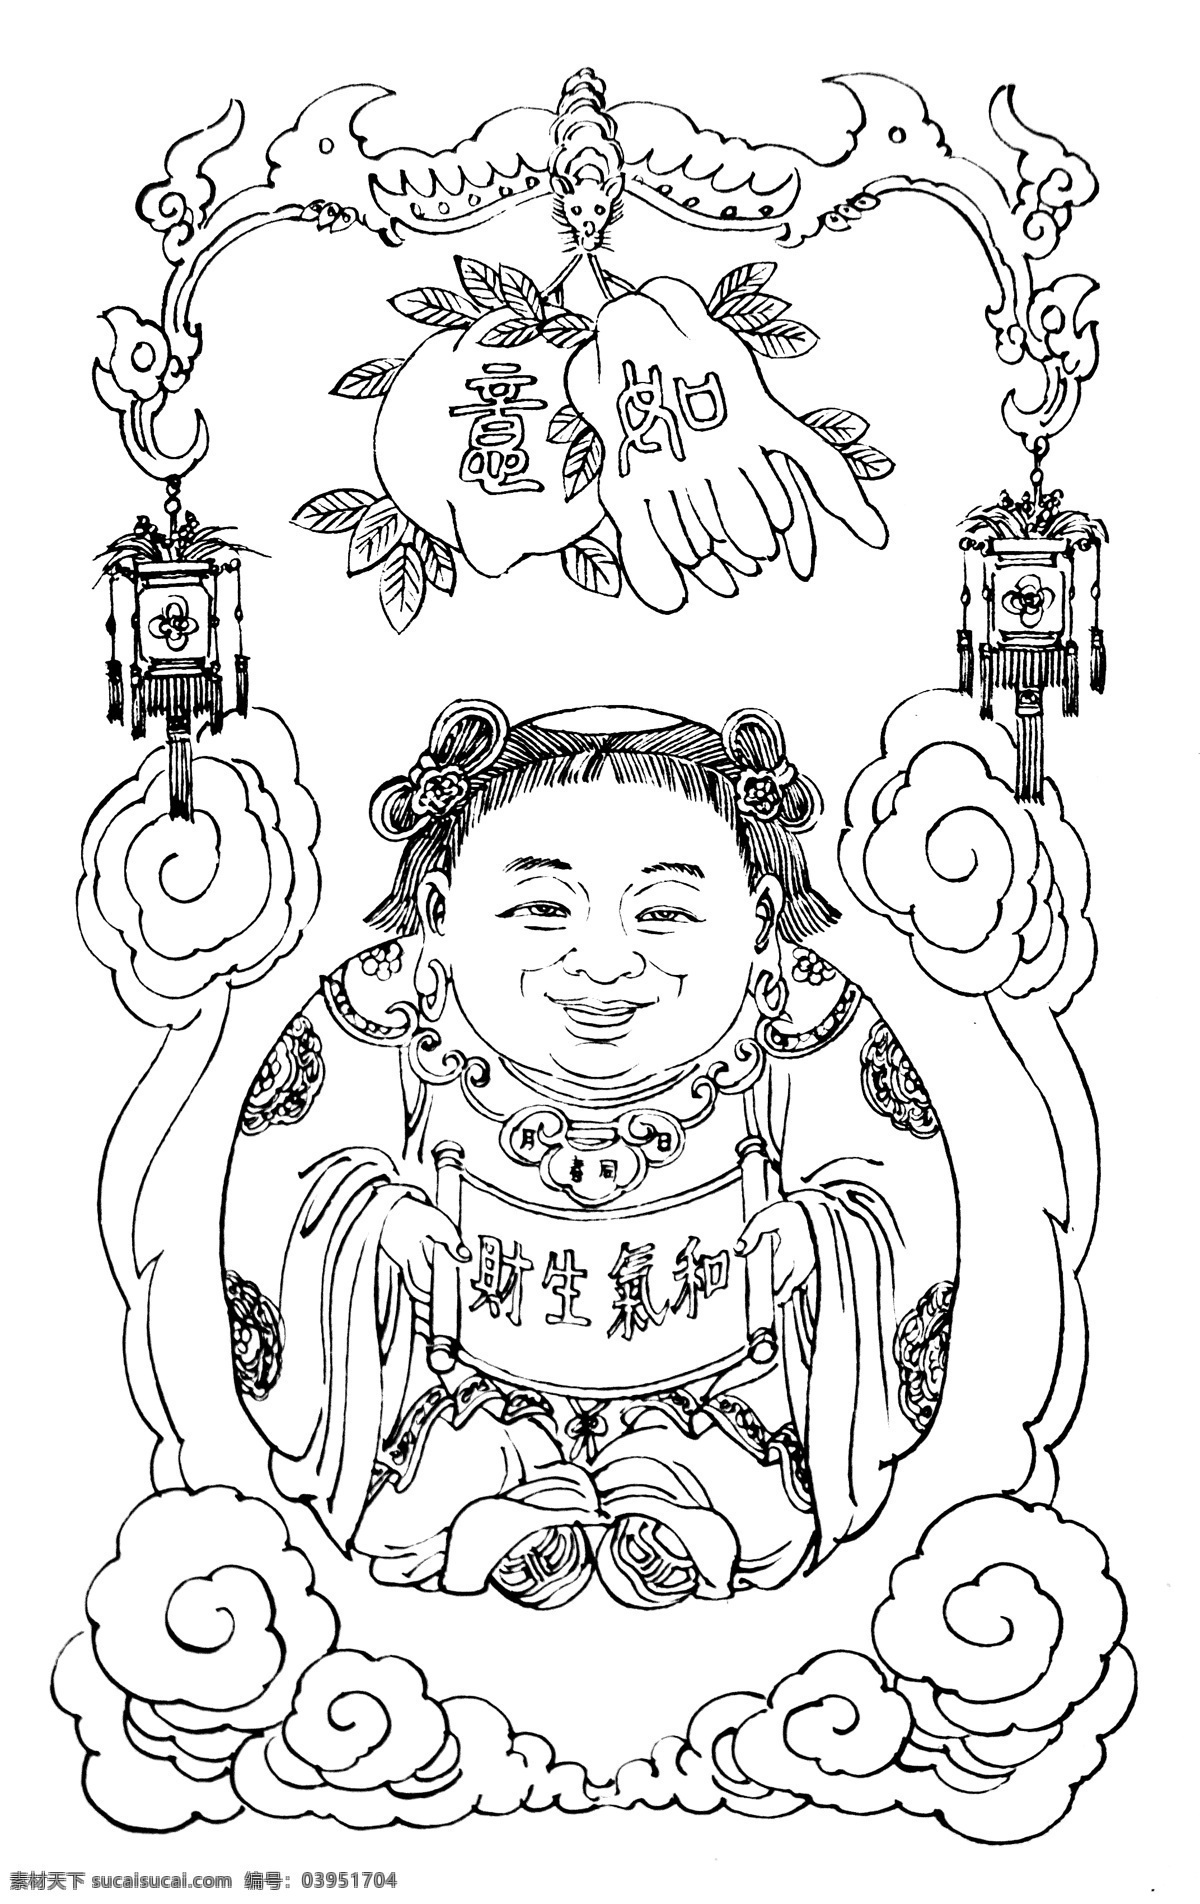 和气生财 吉祥图案 神话故事 民间传说 吉祥纹图 神话图案 民俗文化 中国传统 中国吉祥图像 绘画书法 文化艺术